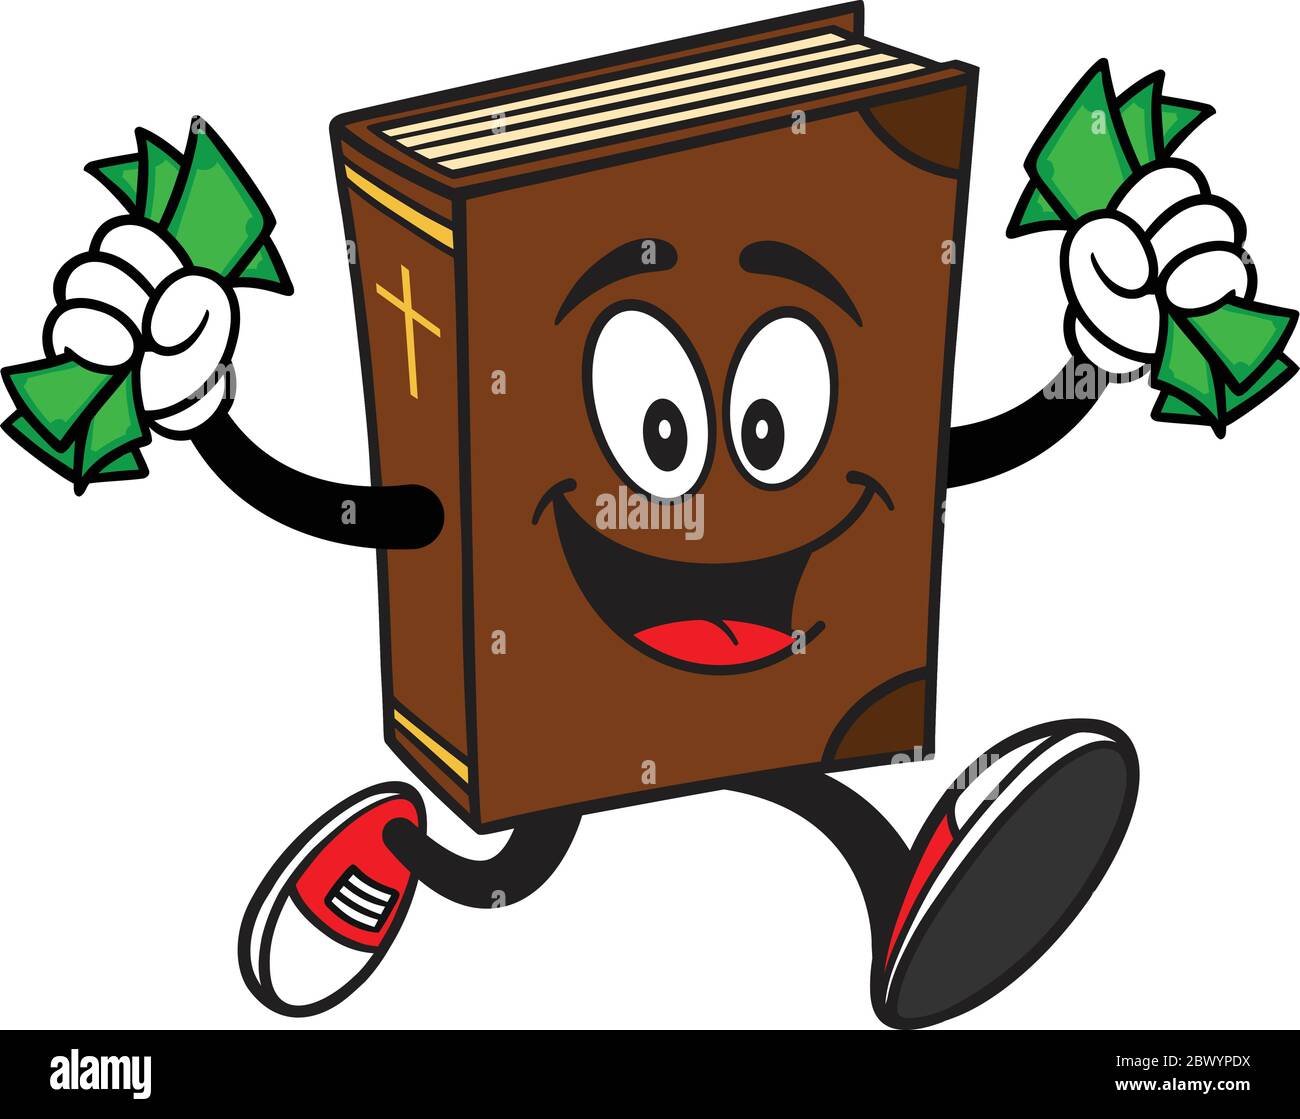 La Mascotte della Bibbia che corre con soldi - UN'illustrazione del cartone  animato di una mascotte della Bibbia che funziona con soldi Immagine e  Vettoriale - Alamy